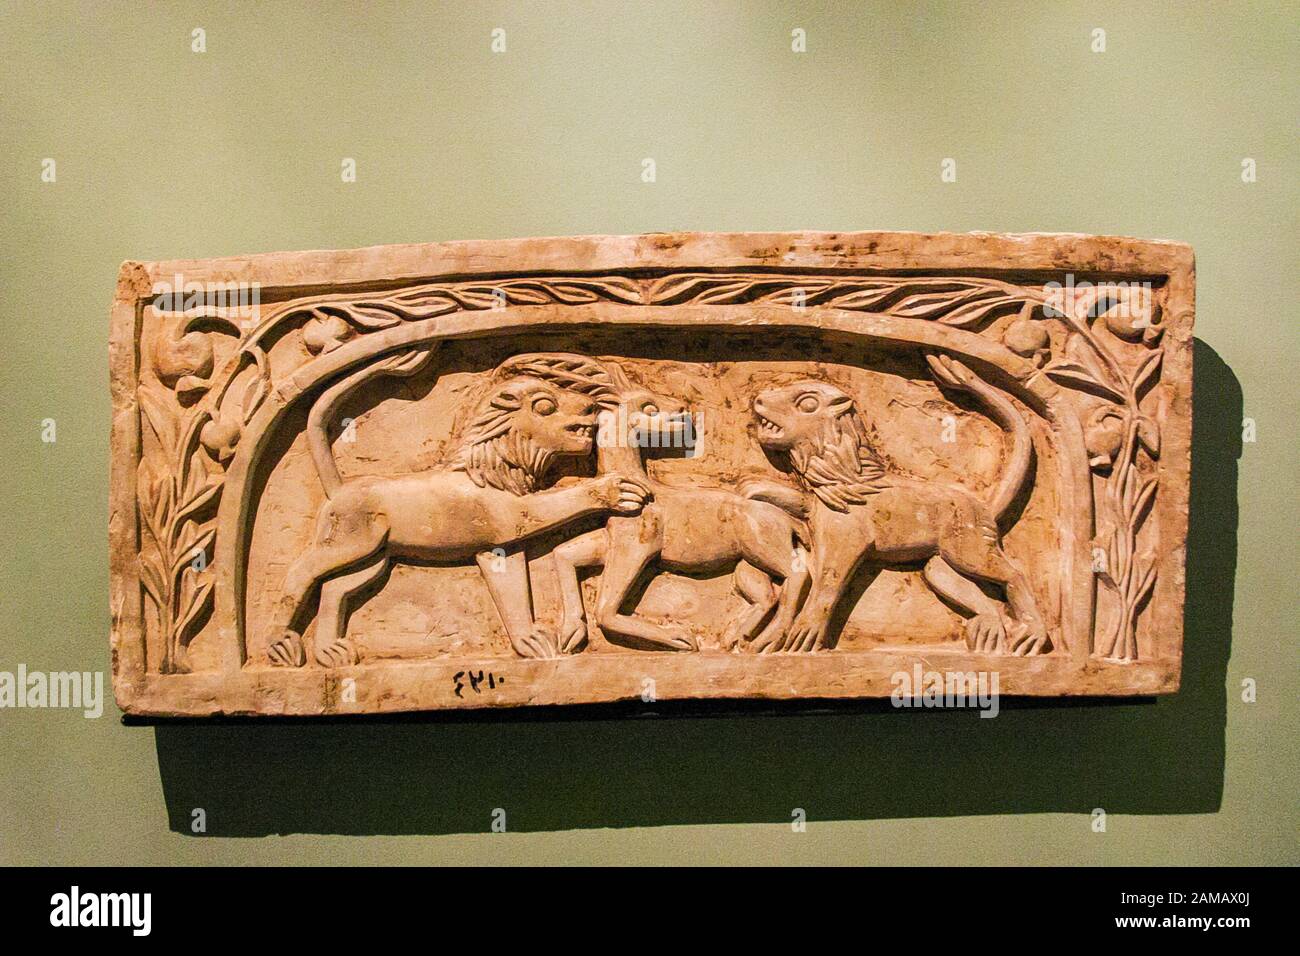 Egypte, Alexandrie, Musée national, art copte, stela avec 2 lions et une gazelle. Banque D'Images